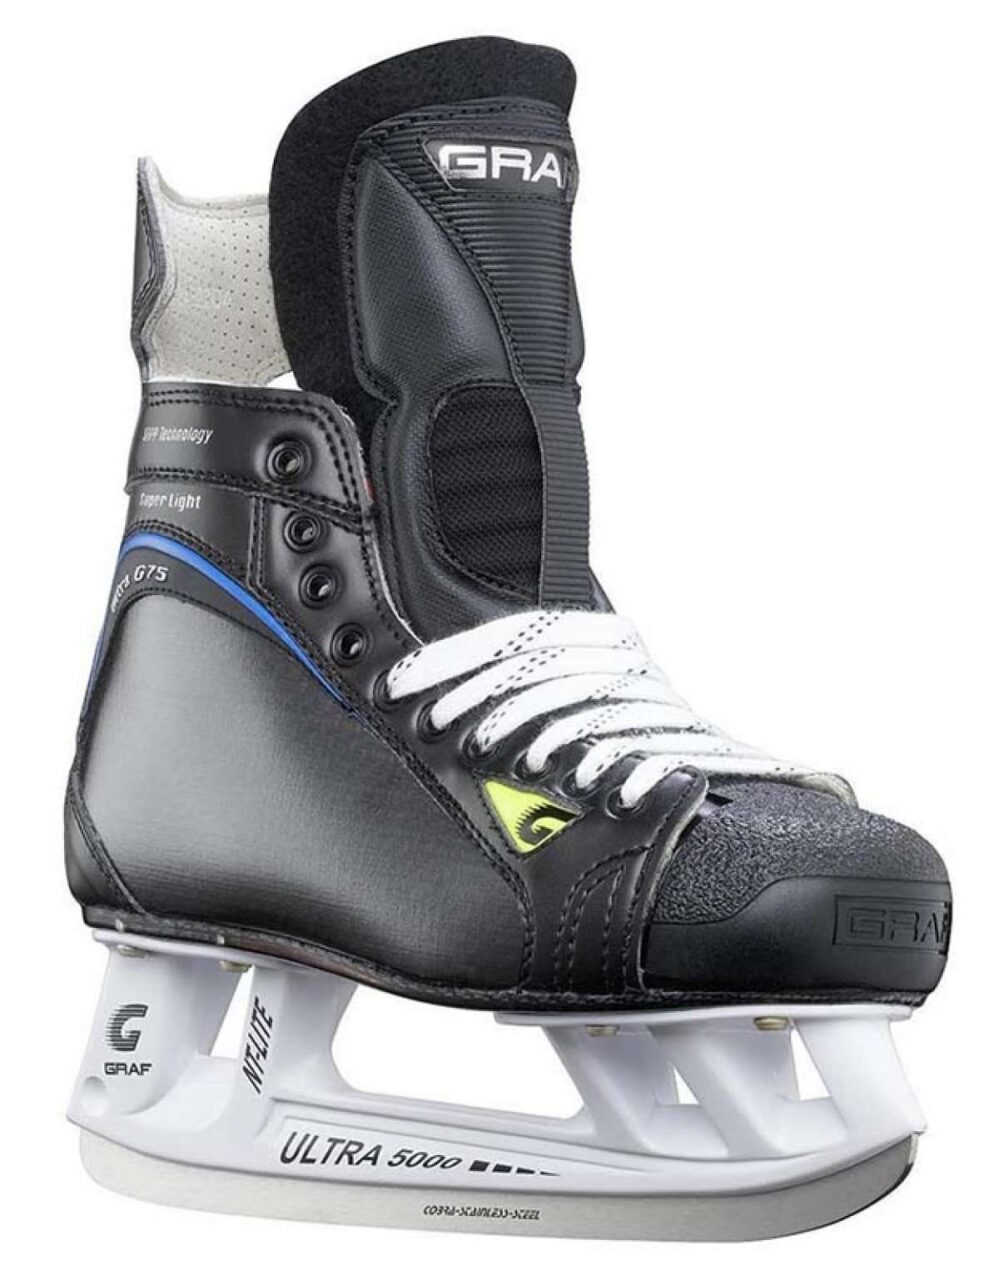 Профессиональные хоккейные коньки GRAF Ultra G-75 Ultralite 5000